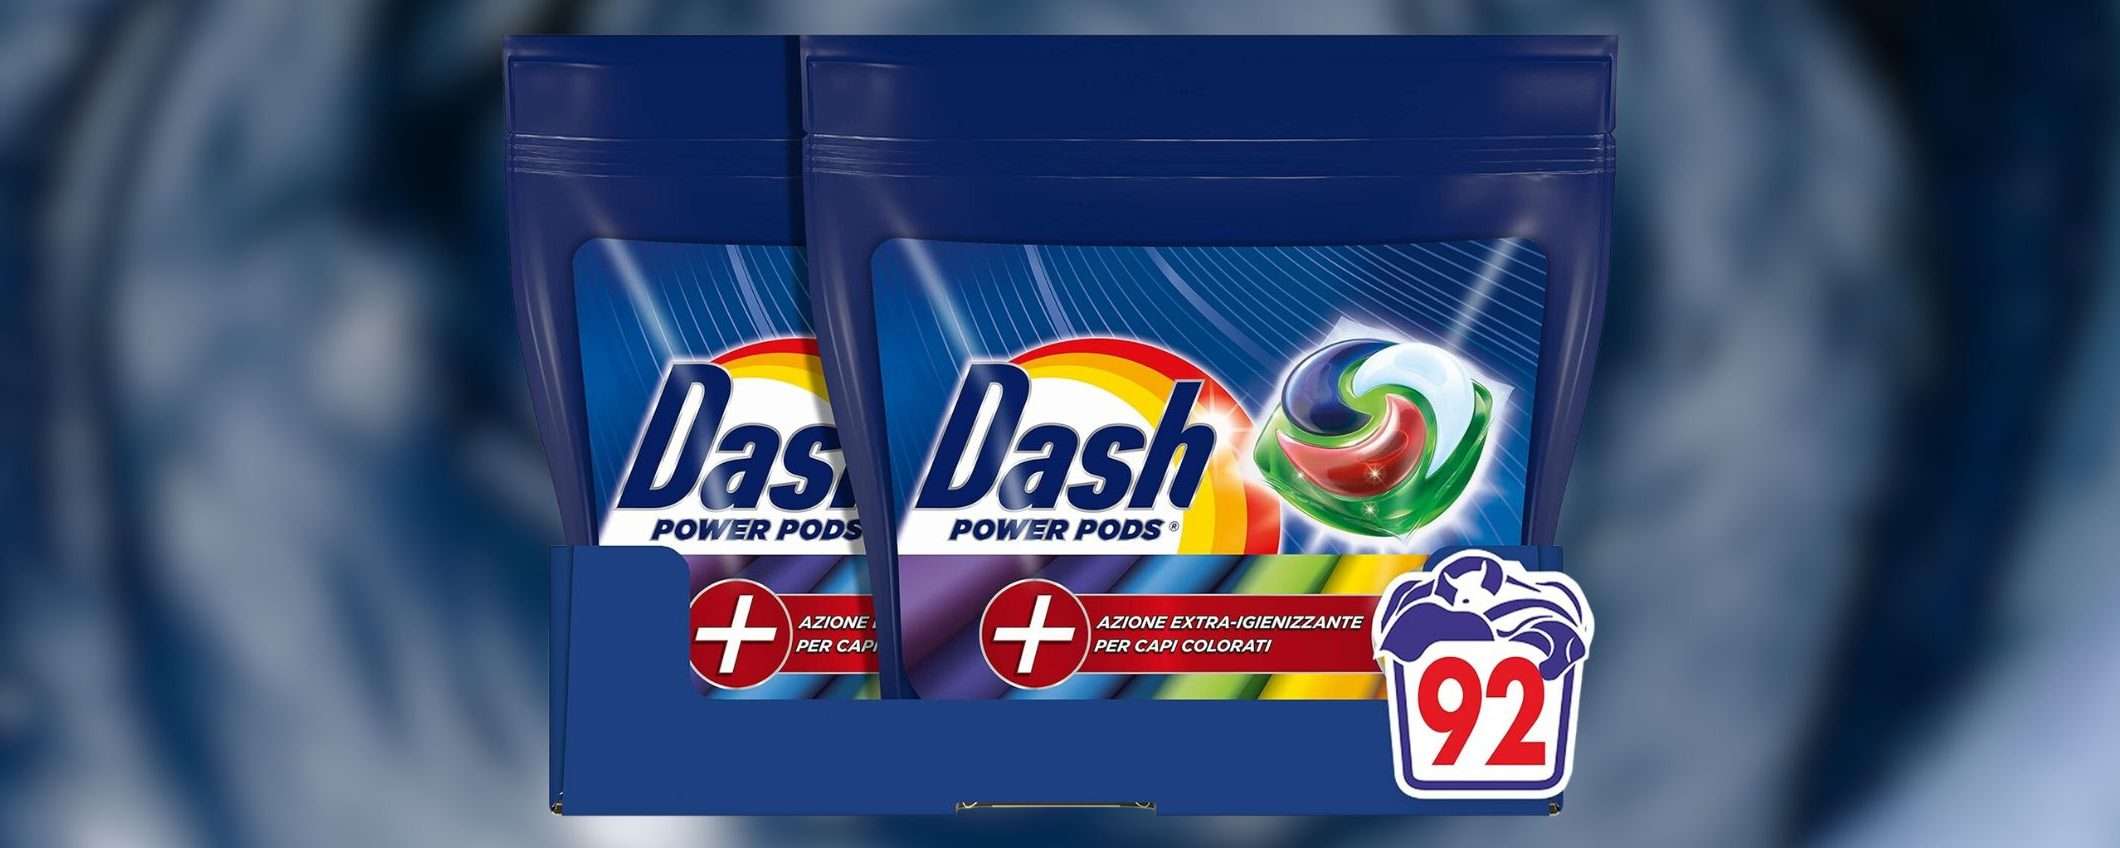 Dash Pods Detersivo Lavatrice: 92 CAPSULE a prezzo SCORTA su Amazon